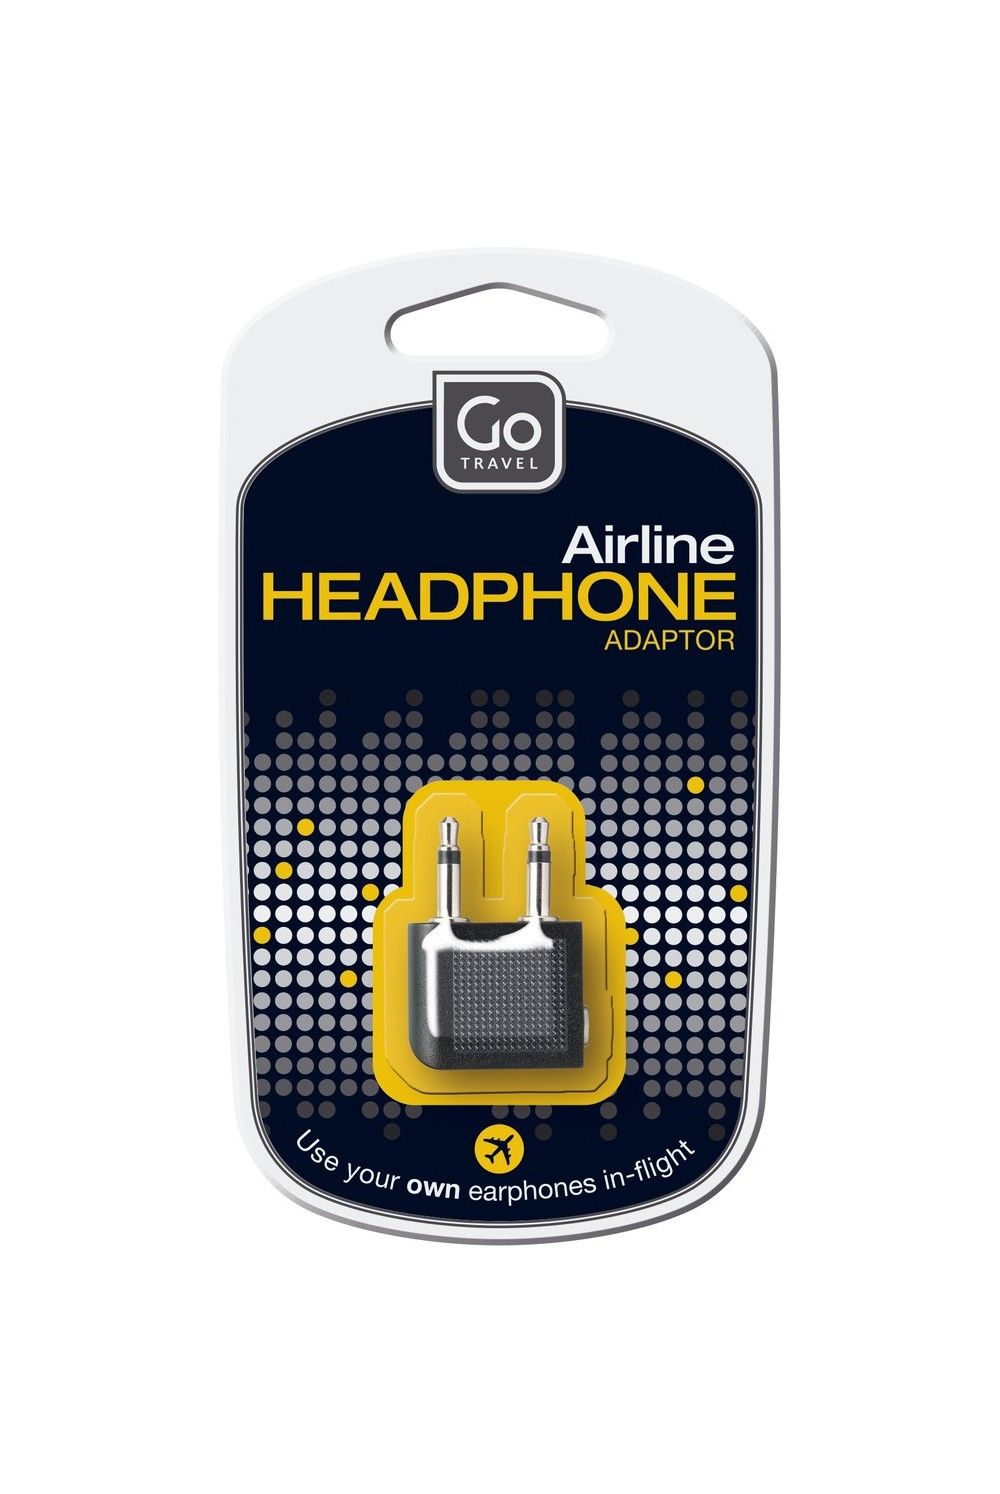 Go Travel Audioadapter für den Kopfhöreranschluss im Flugzeug